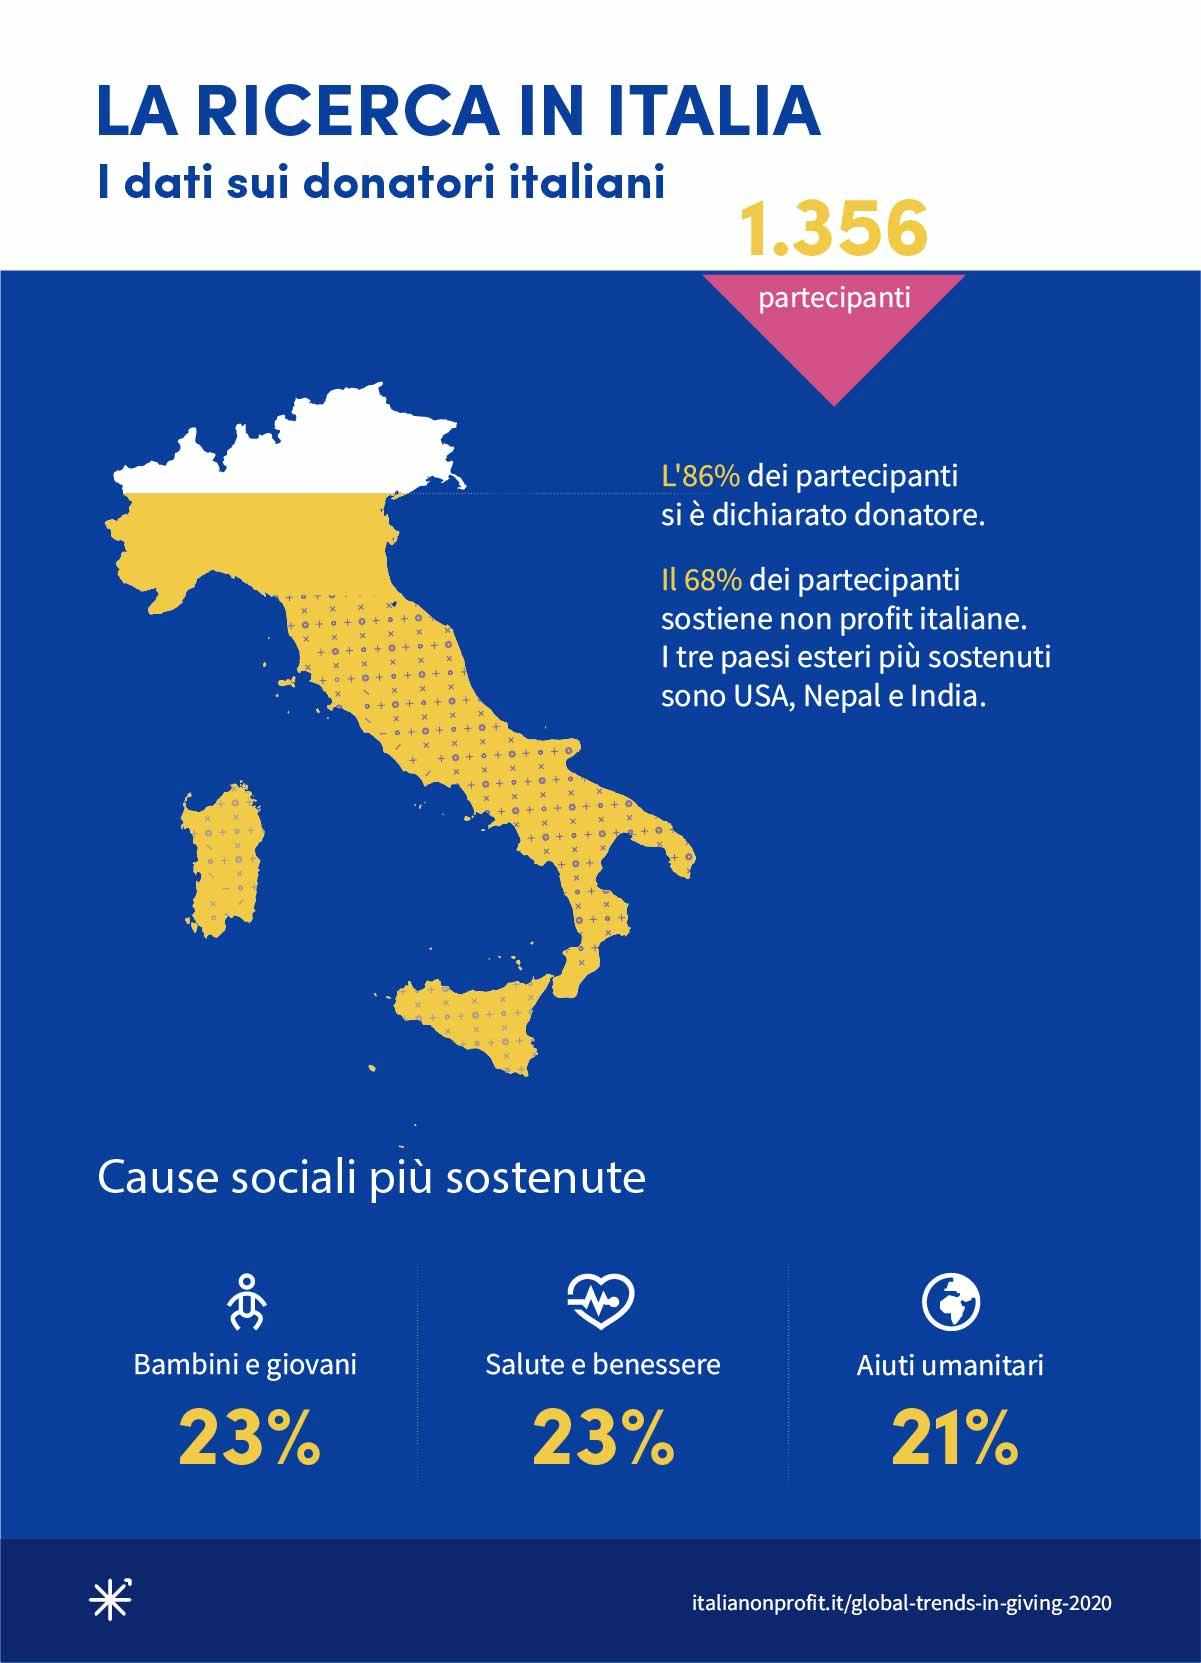 i dati sui donatori e sulle donazioni in Italia